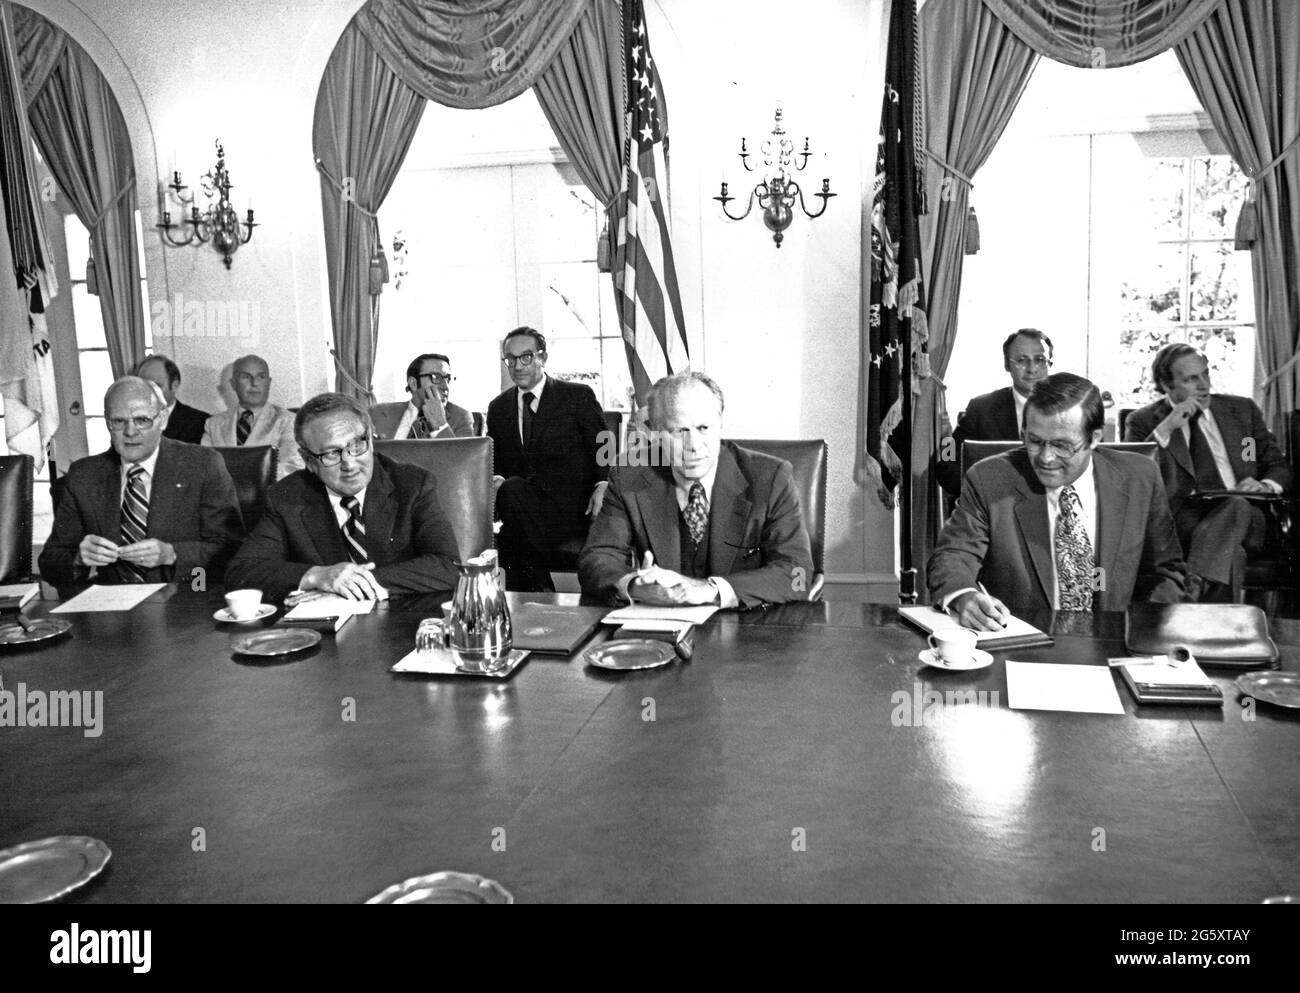 Le président des États-Unis, Gerald R. Ford, présente son cabinet après son retour du Sommet économique international de deux jours sur Dorado Beach, à Porto Rico, dans la salle du Cabinet de la Maison Blanche à Washington, DC, le 29 juin 1976. Assis à la table, de gauche à droite : le secrétaire AMÉRICAIN à l'intérieur Thomas S. Kleppe, le secrétaire d'État américain Henry A. Kissinger, le président Ford et le secrétaire américain à la Défense Donald H. Rumsfeld. Parmi ceux qui sont assis à l'arrière-plan, de gauche à droite, on compte: L. William Seidman, directeur exécutif du Conseil de politique économique et adjoint aux affaires économiques; Alan Greenspan, Banque D'Images